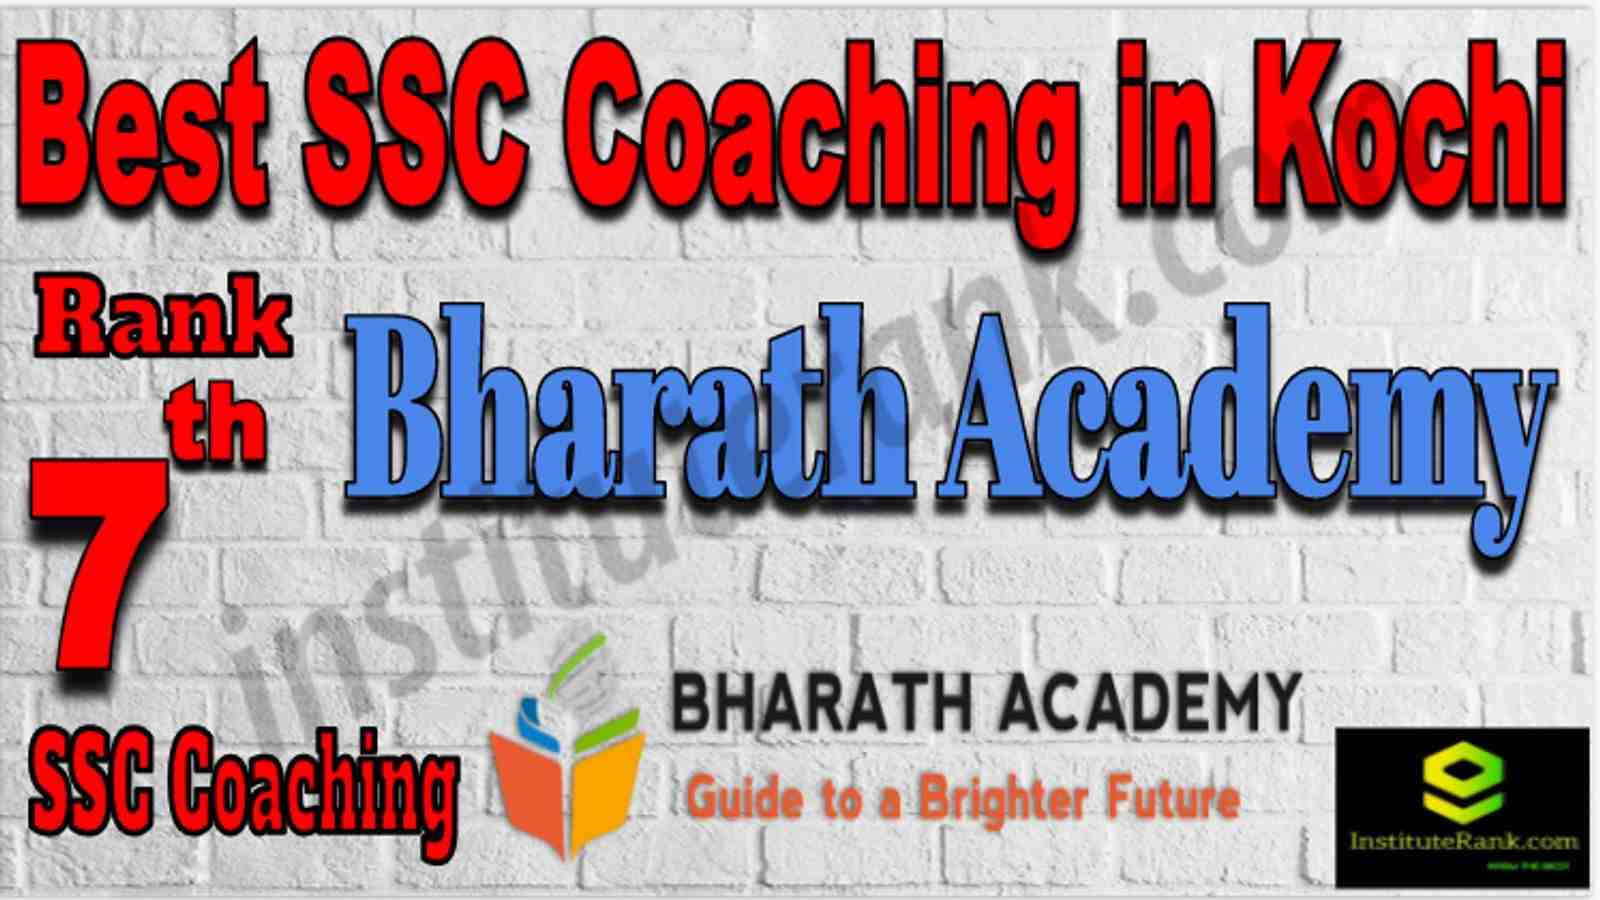 Rank 7 Best SSC Coaching in Kochi